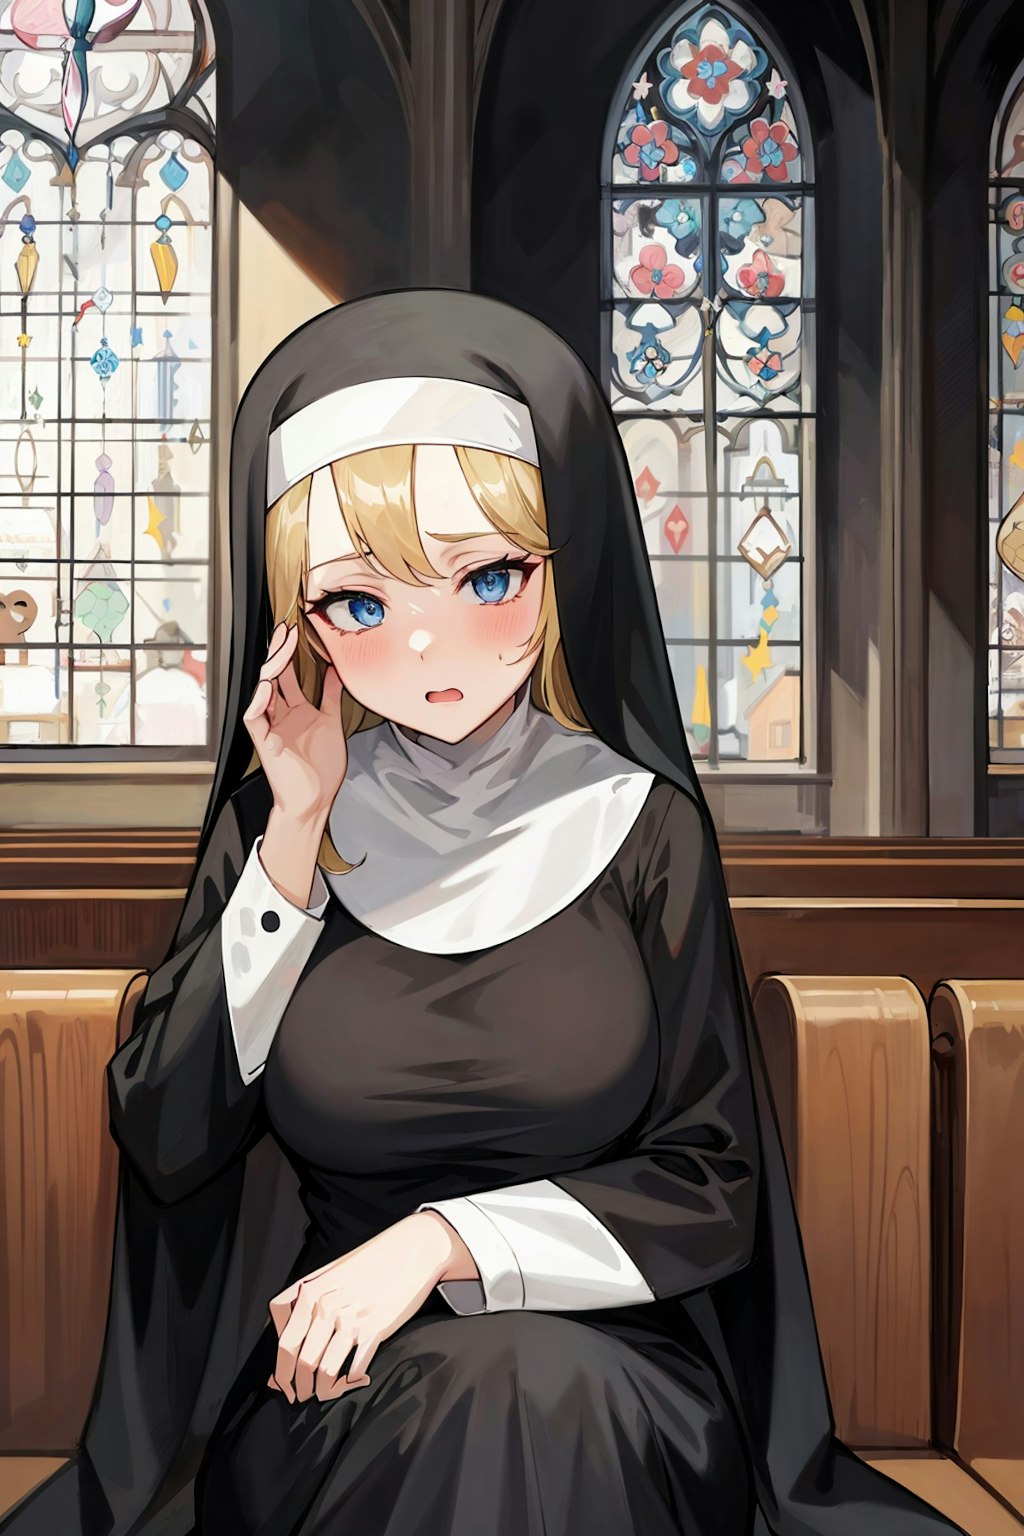 [リクエスト・request]修道女[Nun]